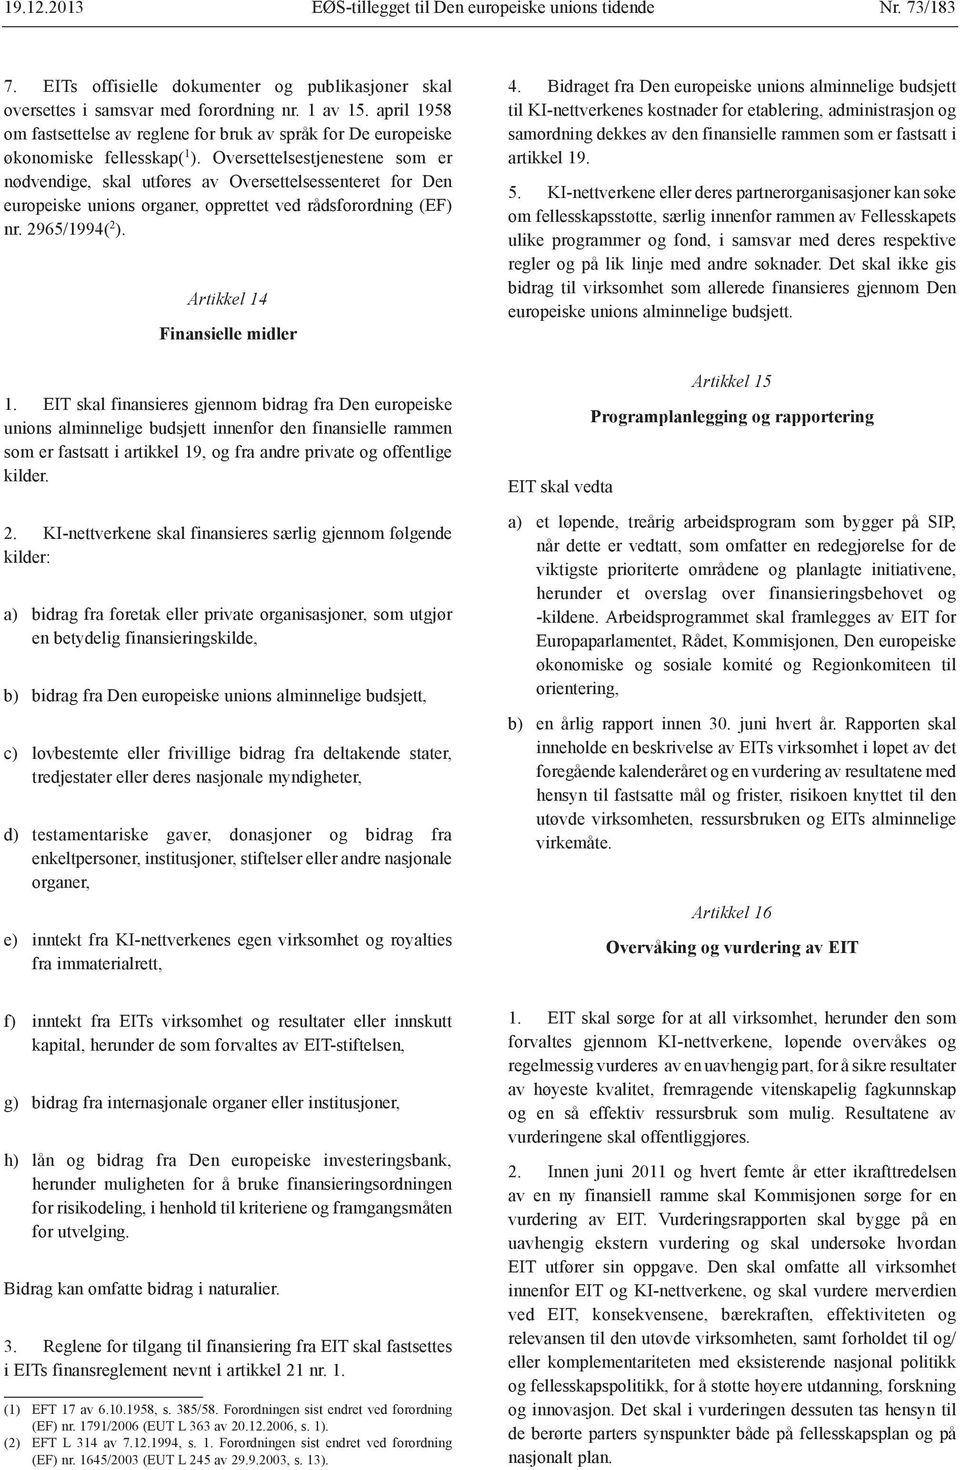 Oversettelsestjenestene som er nødvendige, skal utføres av Oversettelsessenteret for Den europeiske unions organer, opprettet ved rådsforordning (EF) nr. 2965/1994( 2 ).